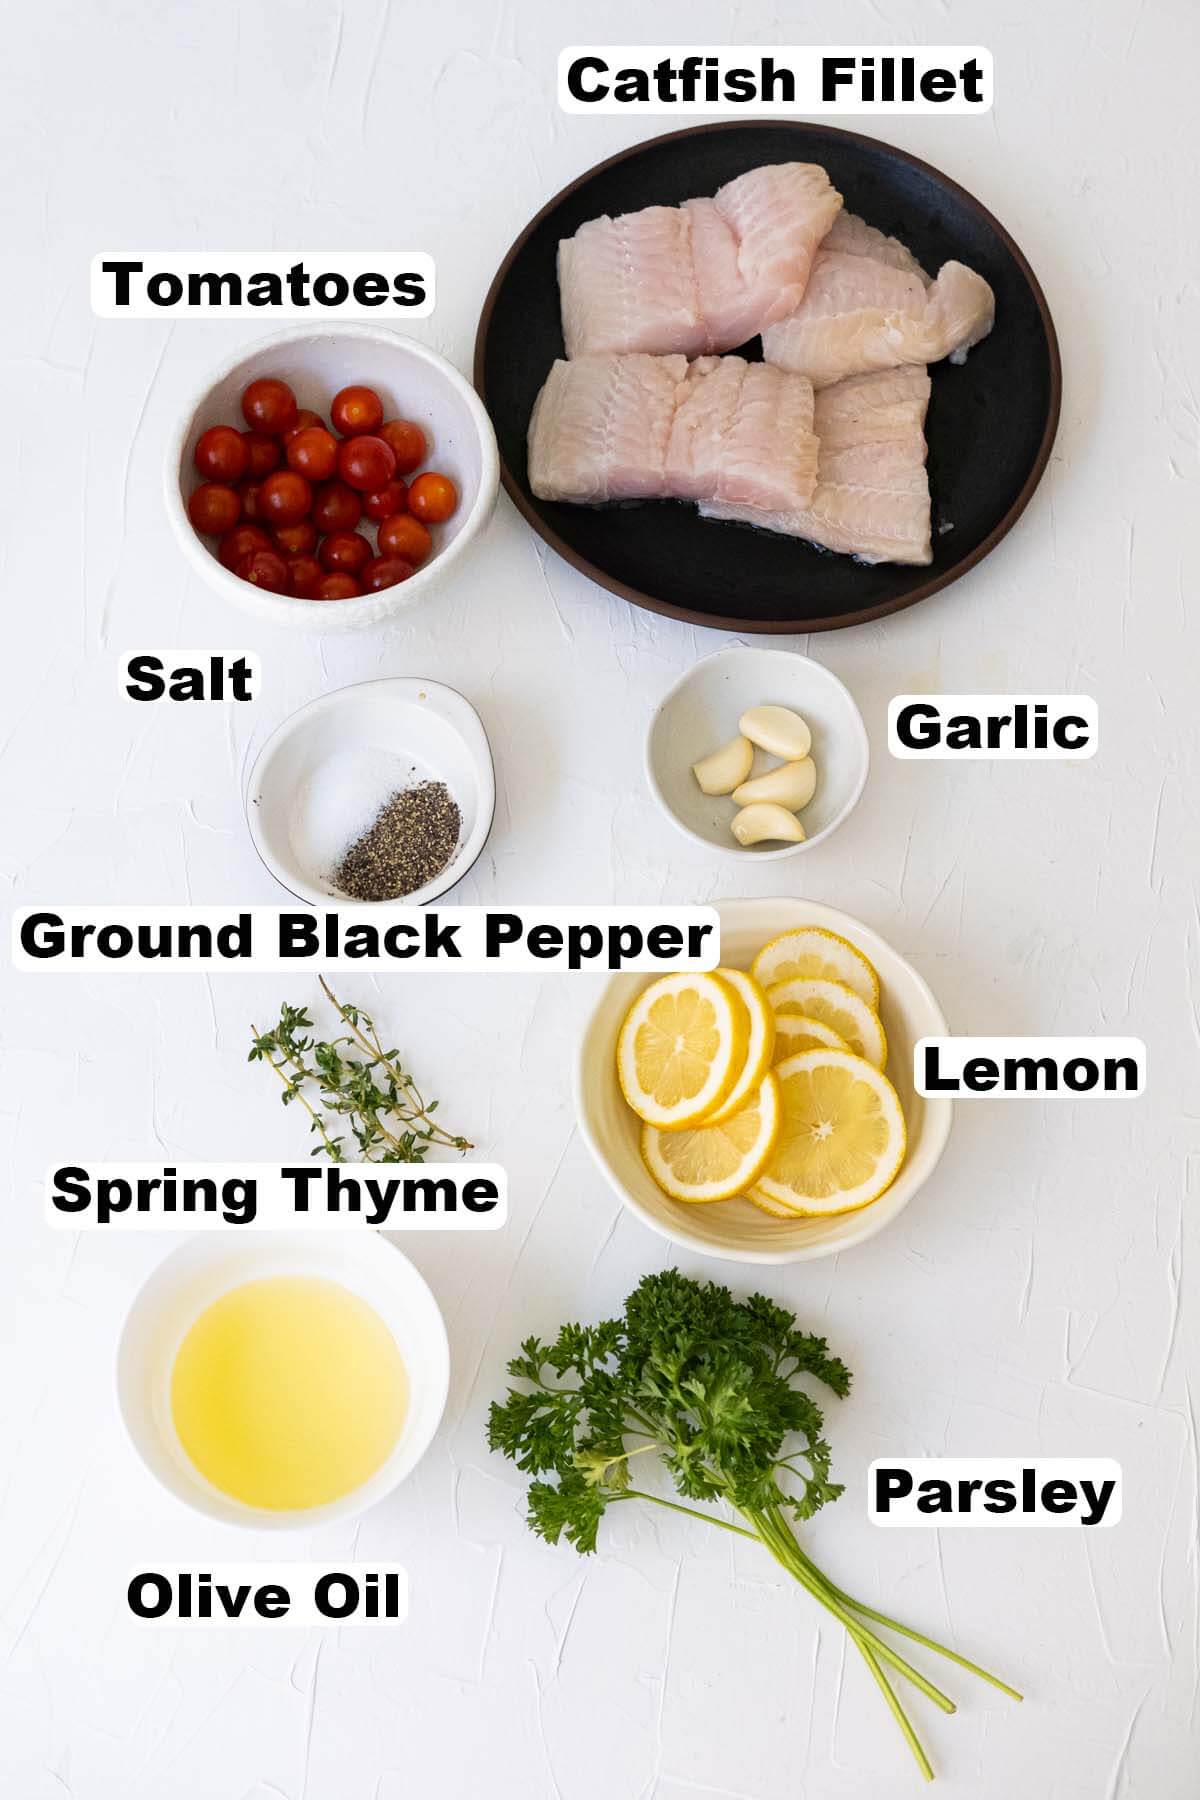 Baked catfish ingredients.